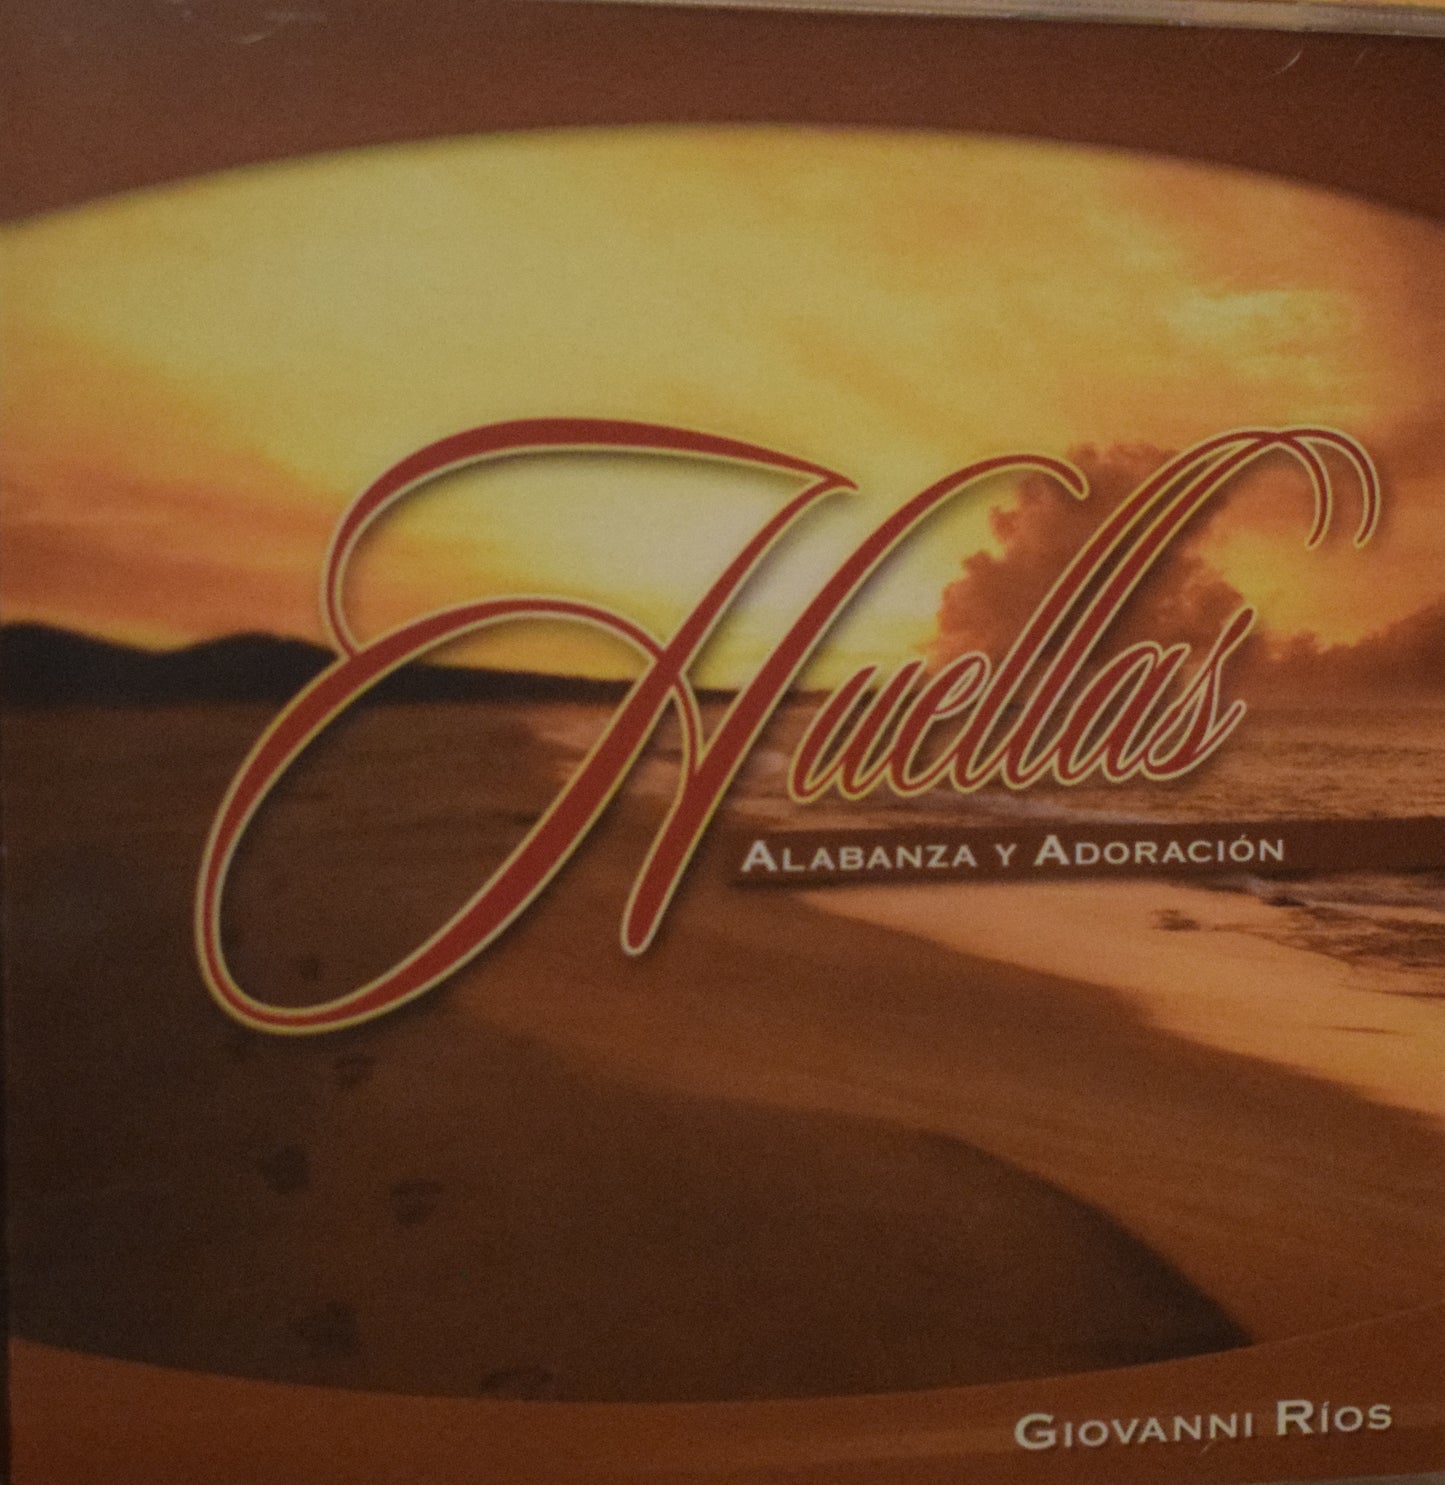 CD – Huellas – Alabanza y Adoración – Giovanni Rios